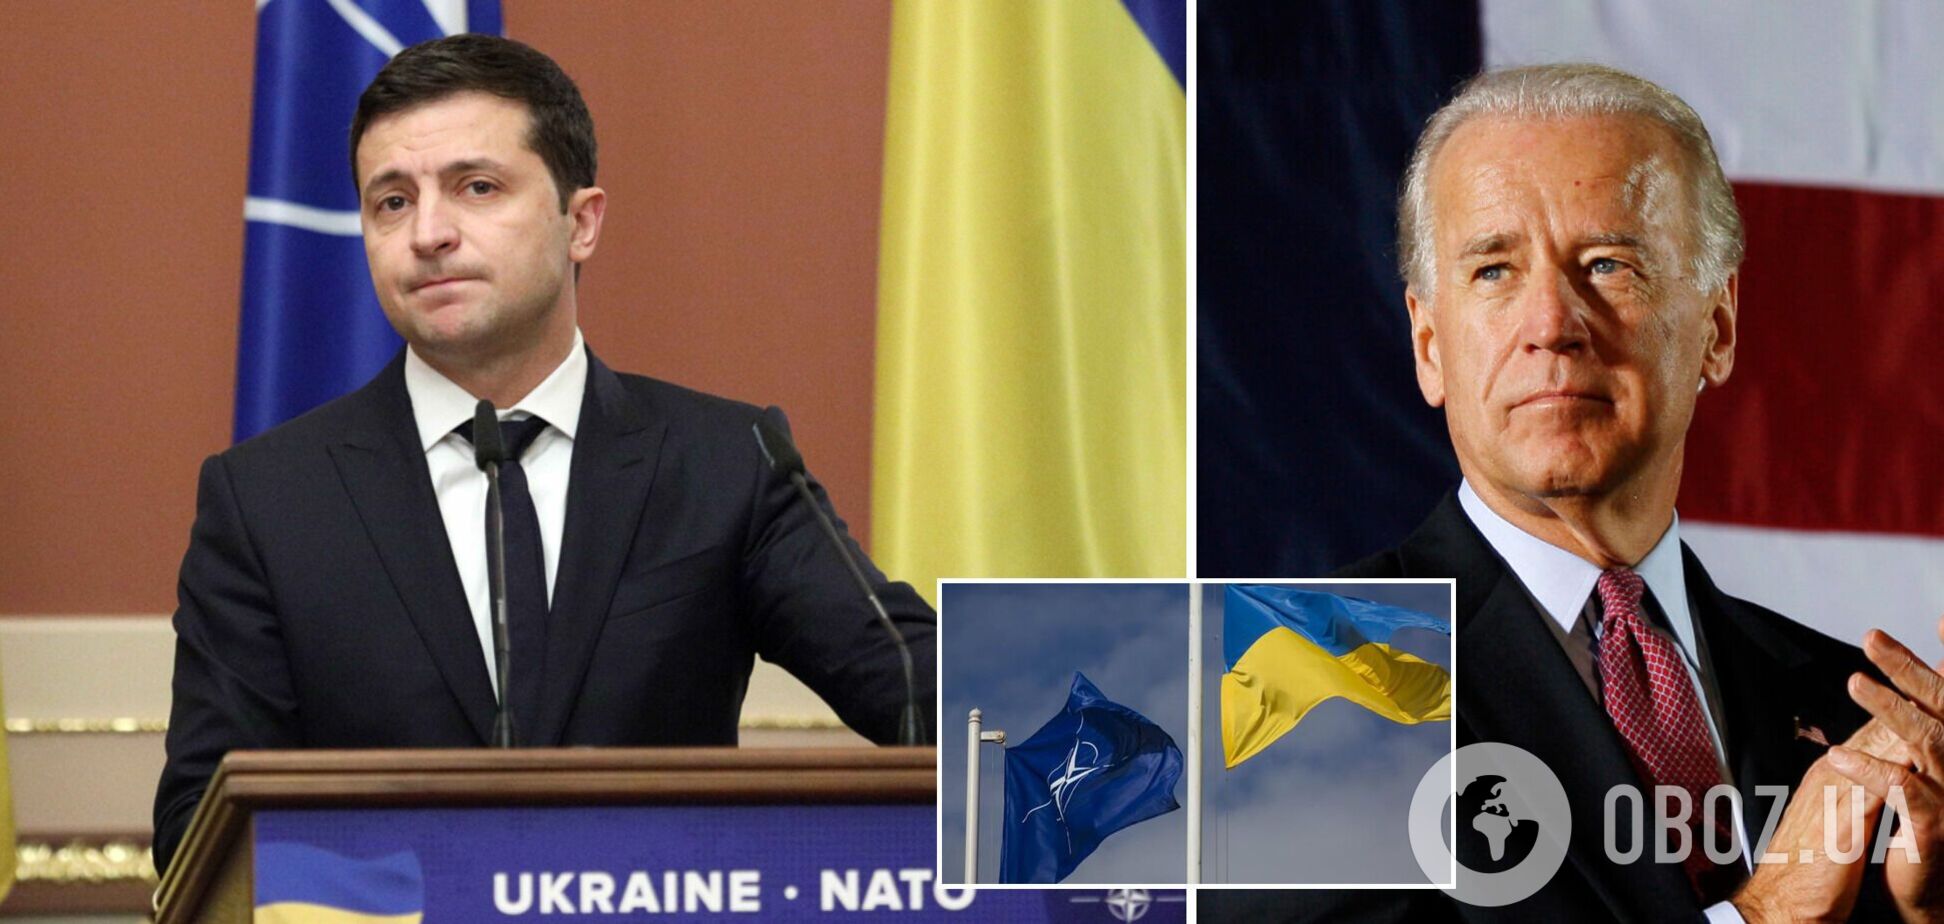 Зеленский заявил Байдену, что вступление Украины в НАТО должно иметь конкретную дату